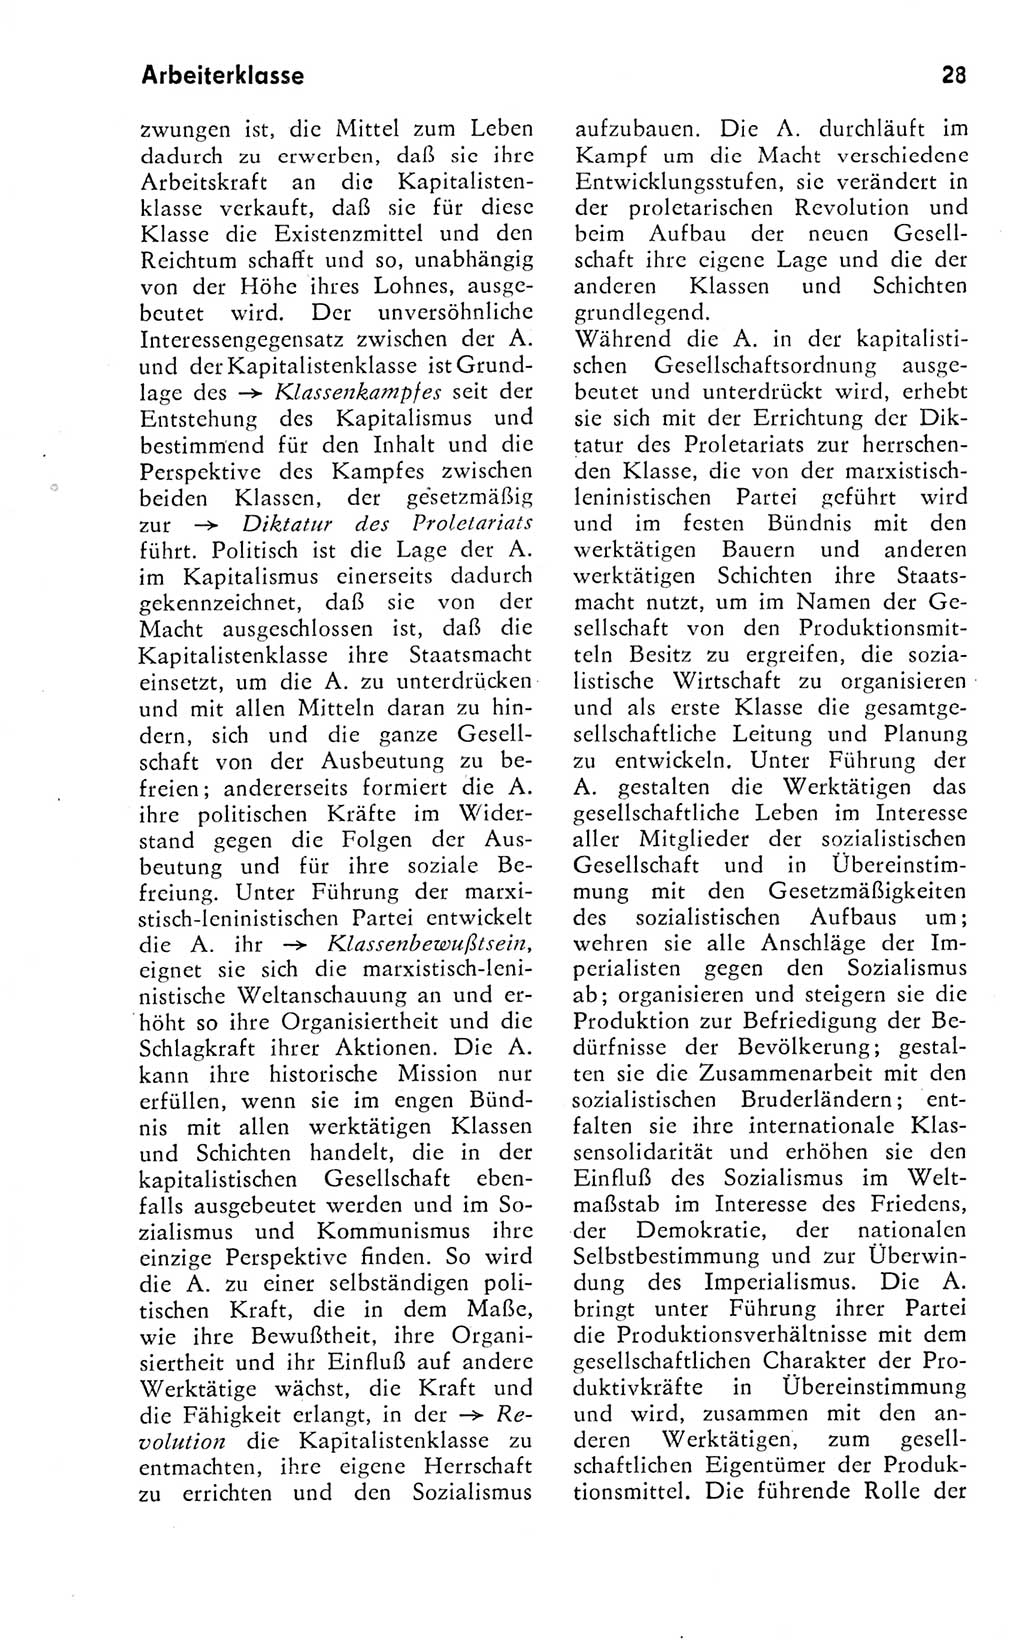 Kleines Wörterbuch der marxistisch-leninistischen Philosophie [Deutsche Demokratische Republik (DDR)] 1974, Seite 28 (Kl. Wb. ML Phil. DDR 1974, S. 28)